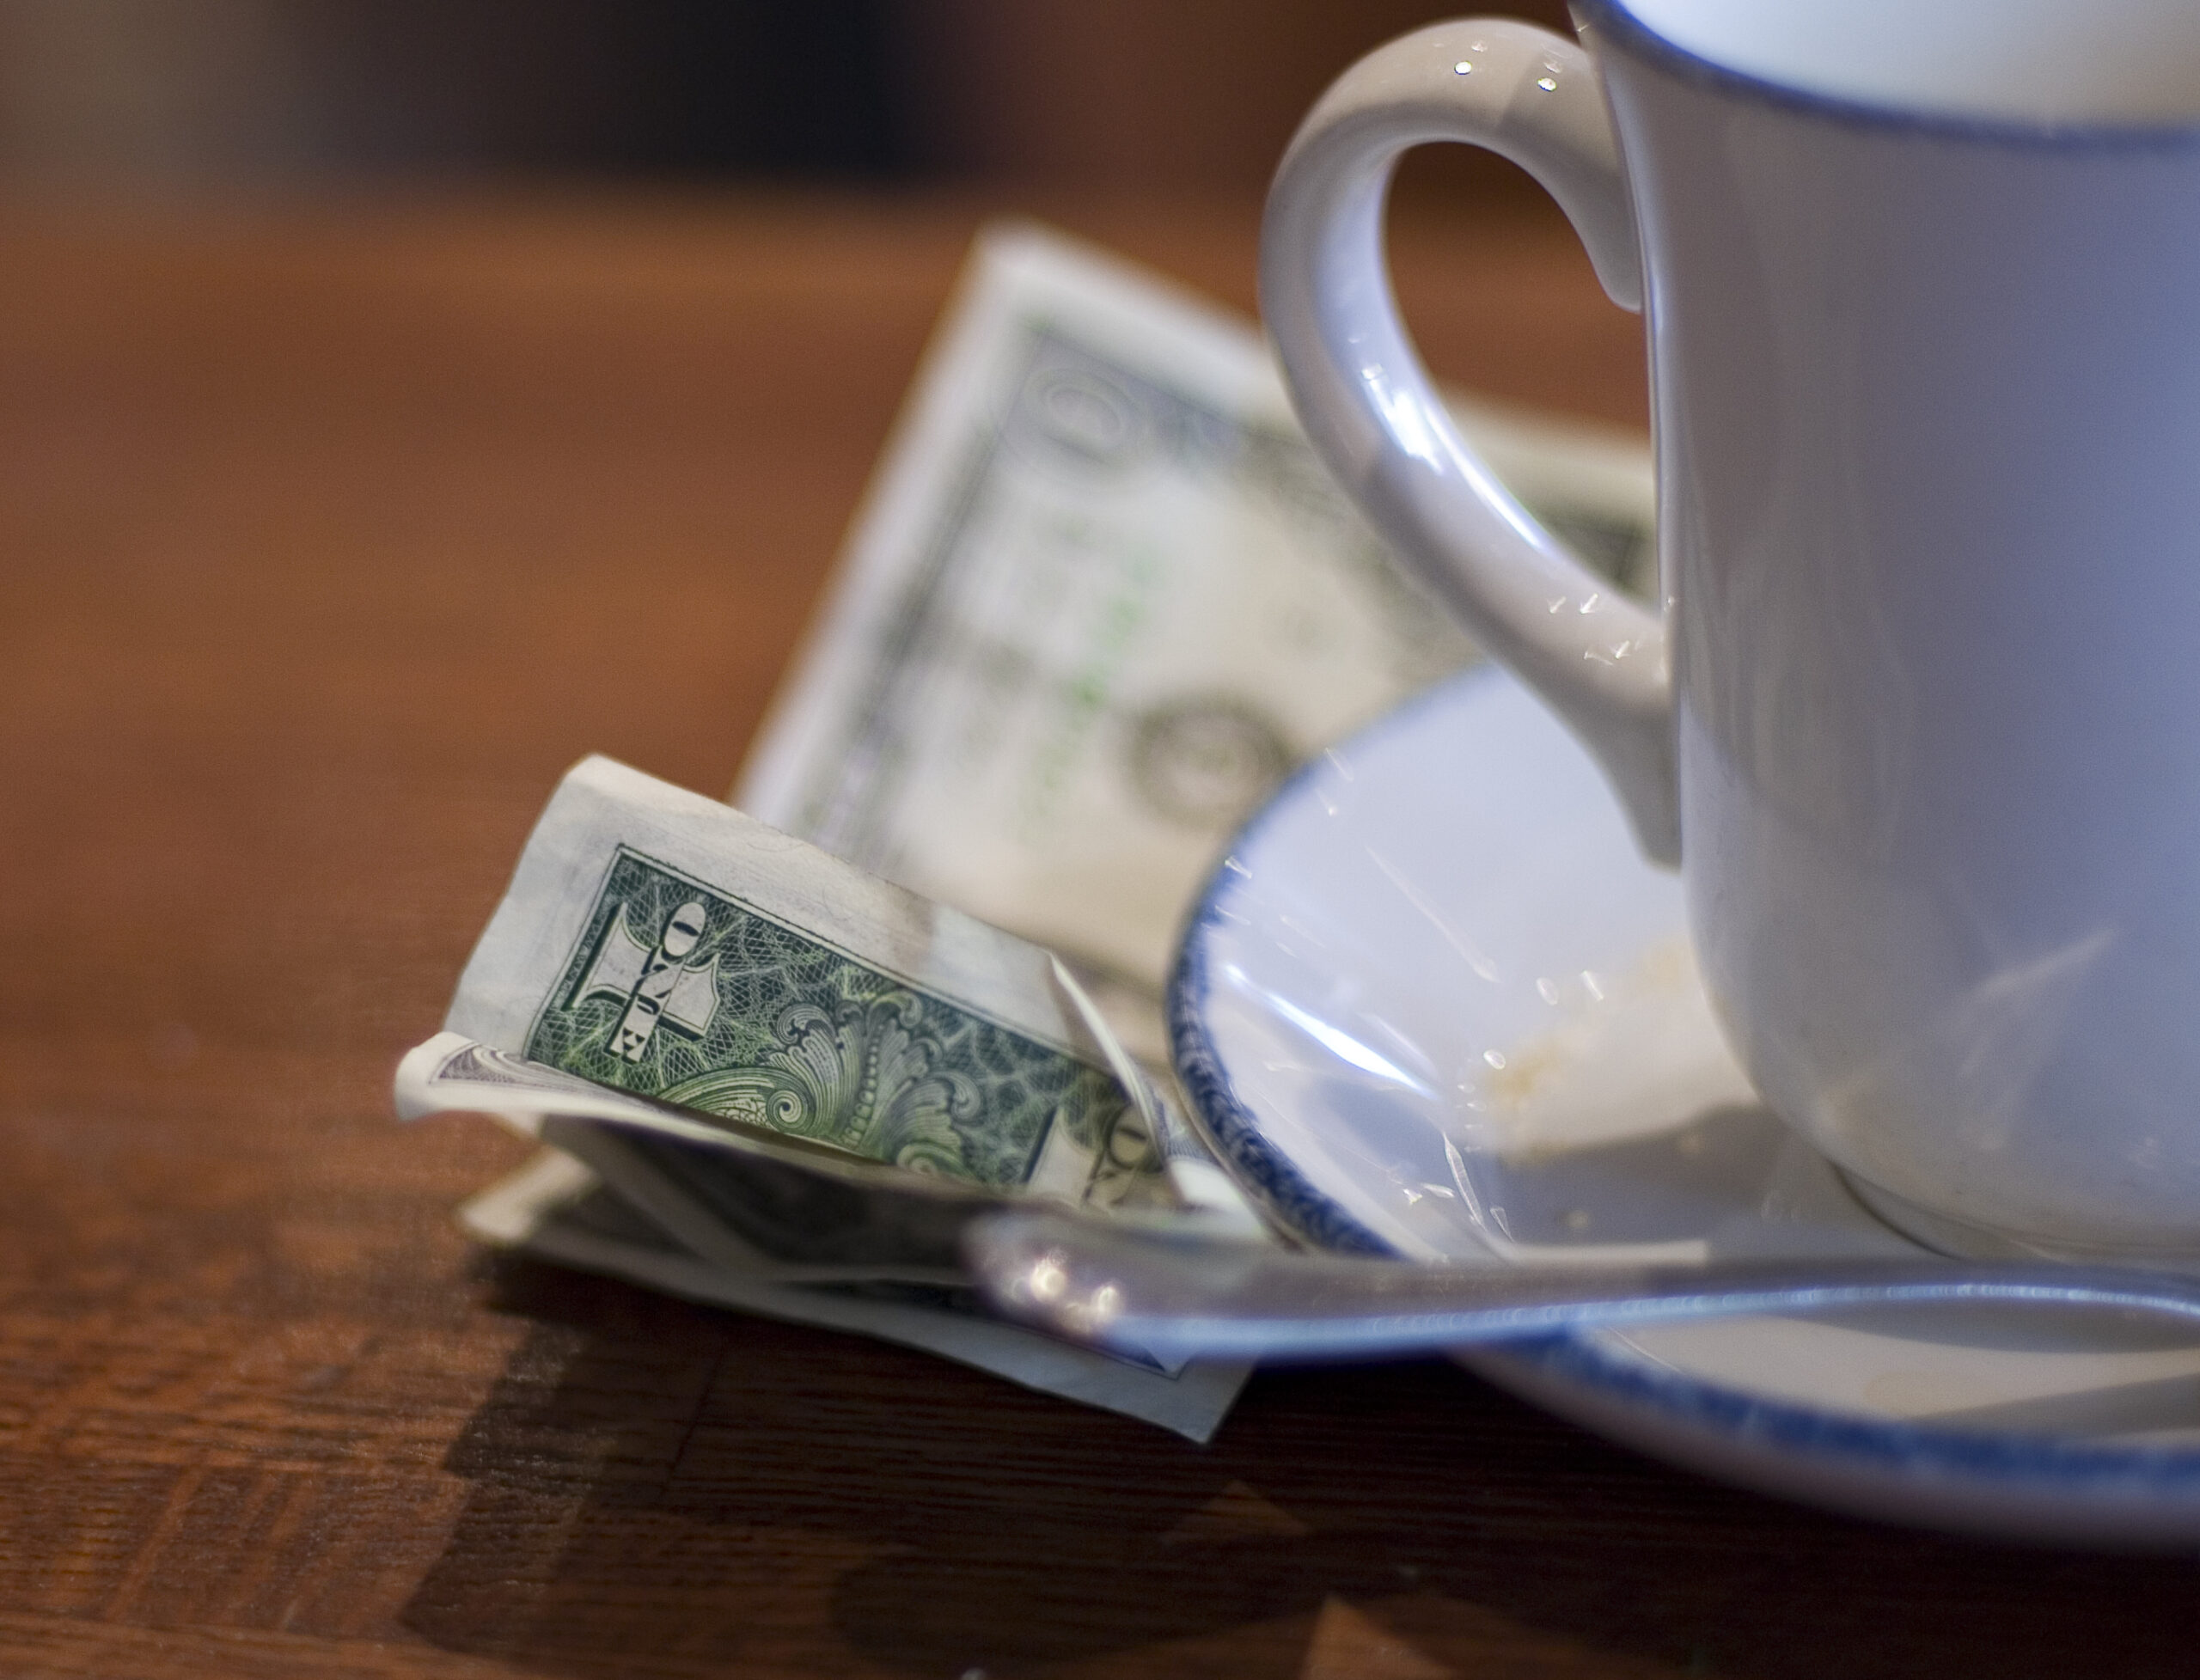 a tip sits next to a coffee mug.